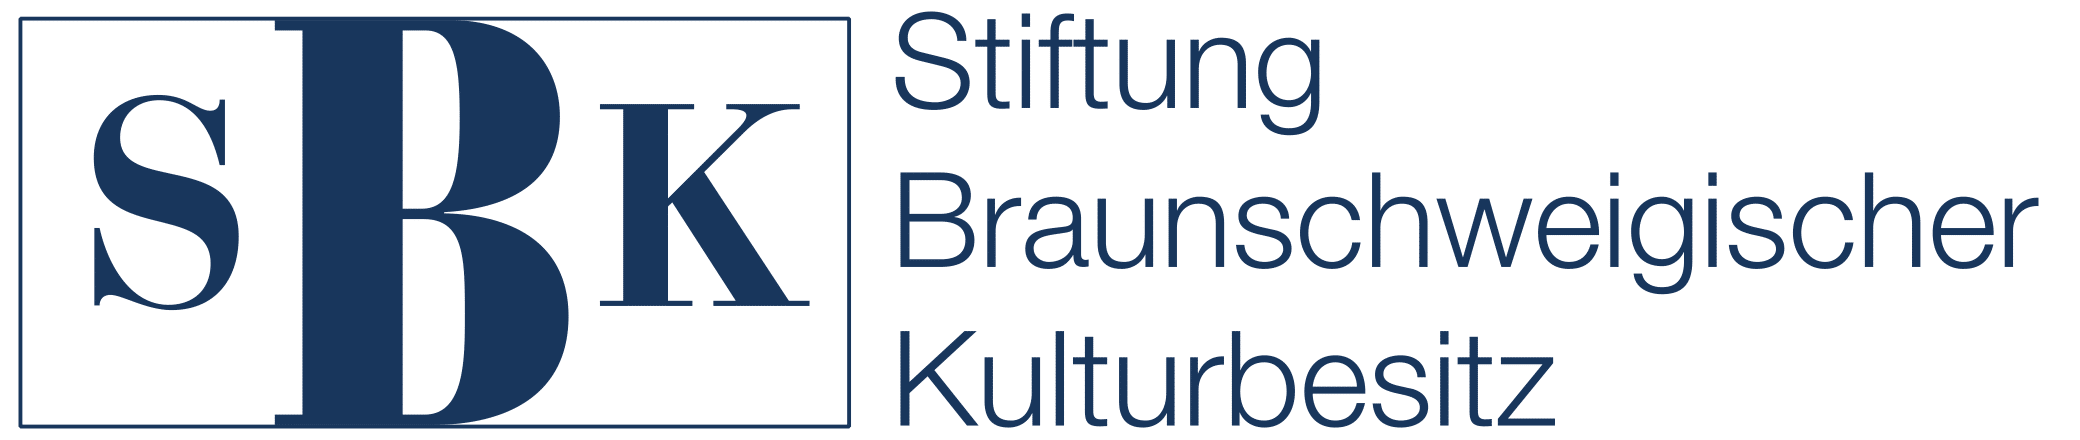 Logo: Stiftung Braunschweigischer Kulturbesitz